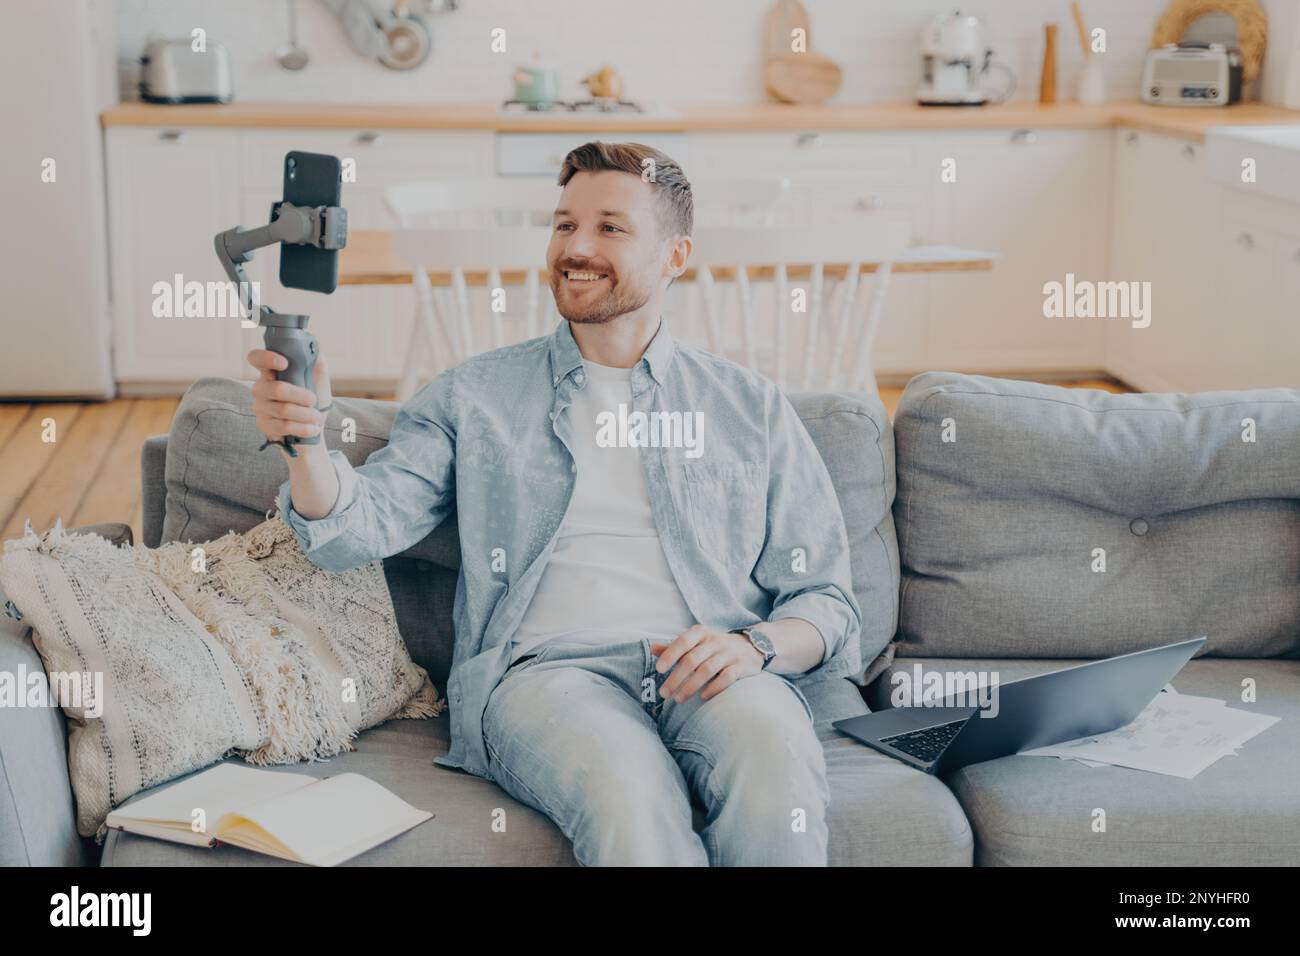 Jeune homme souriant parlant à son ami et lui montrant son appartement pendant un appel vidéo, tenant une nacelle avec un téléphone, assis sur un canapé à côté d'un ordinateur portable, Banque D'Images